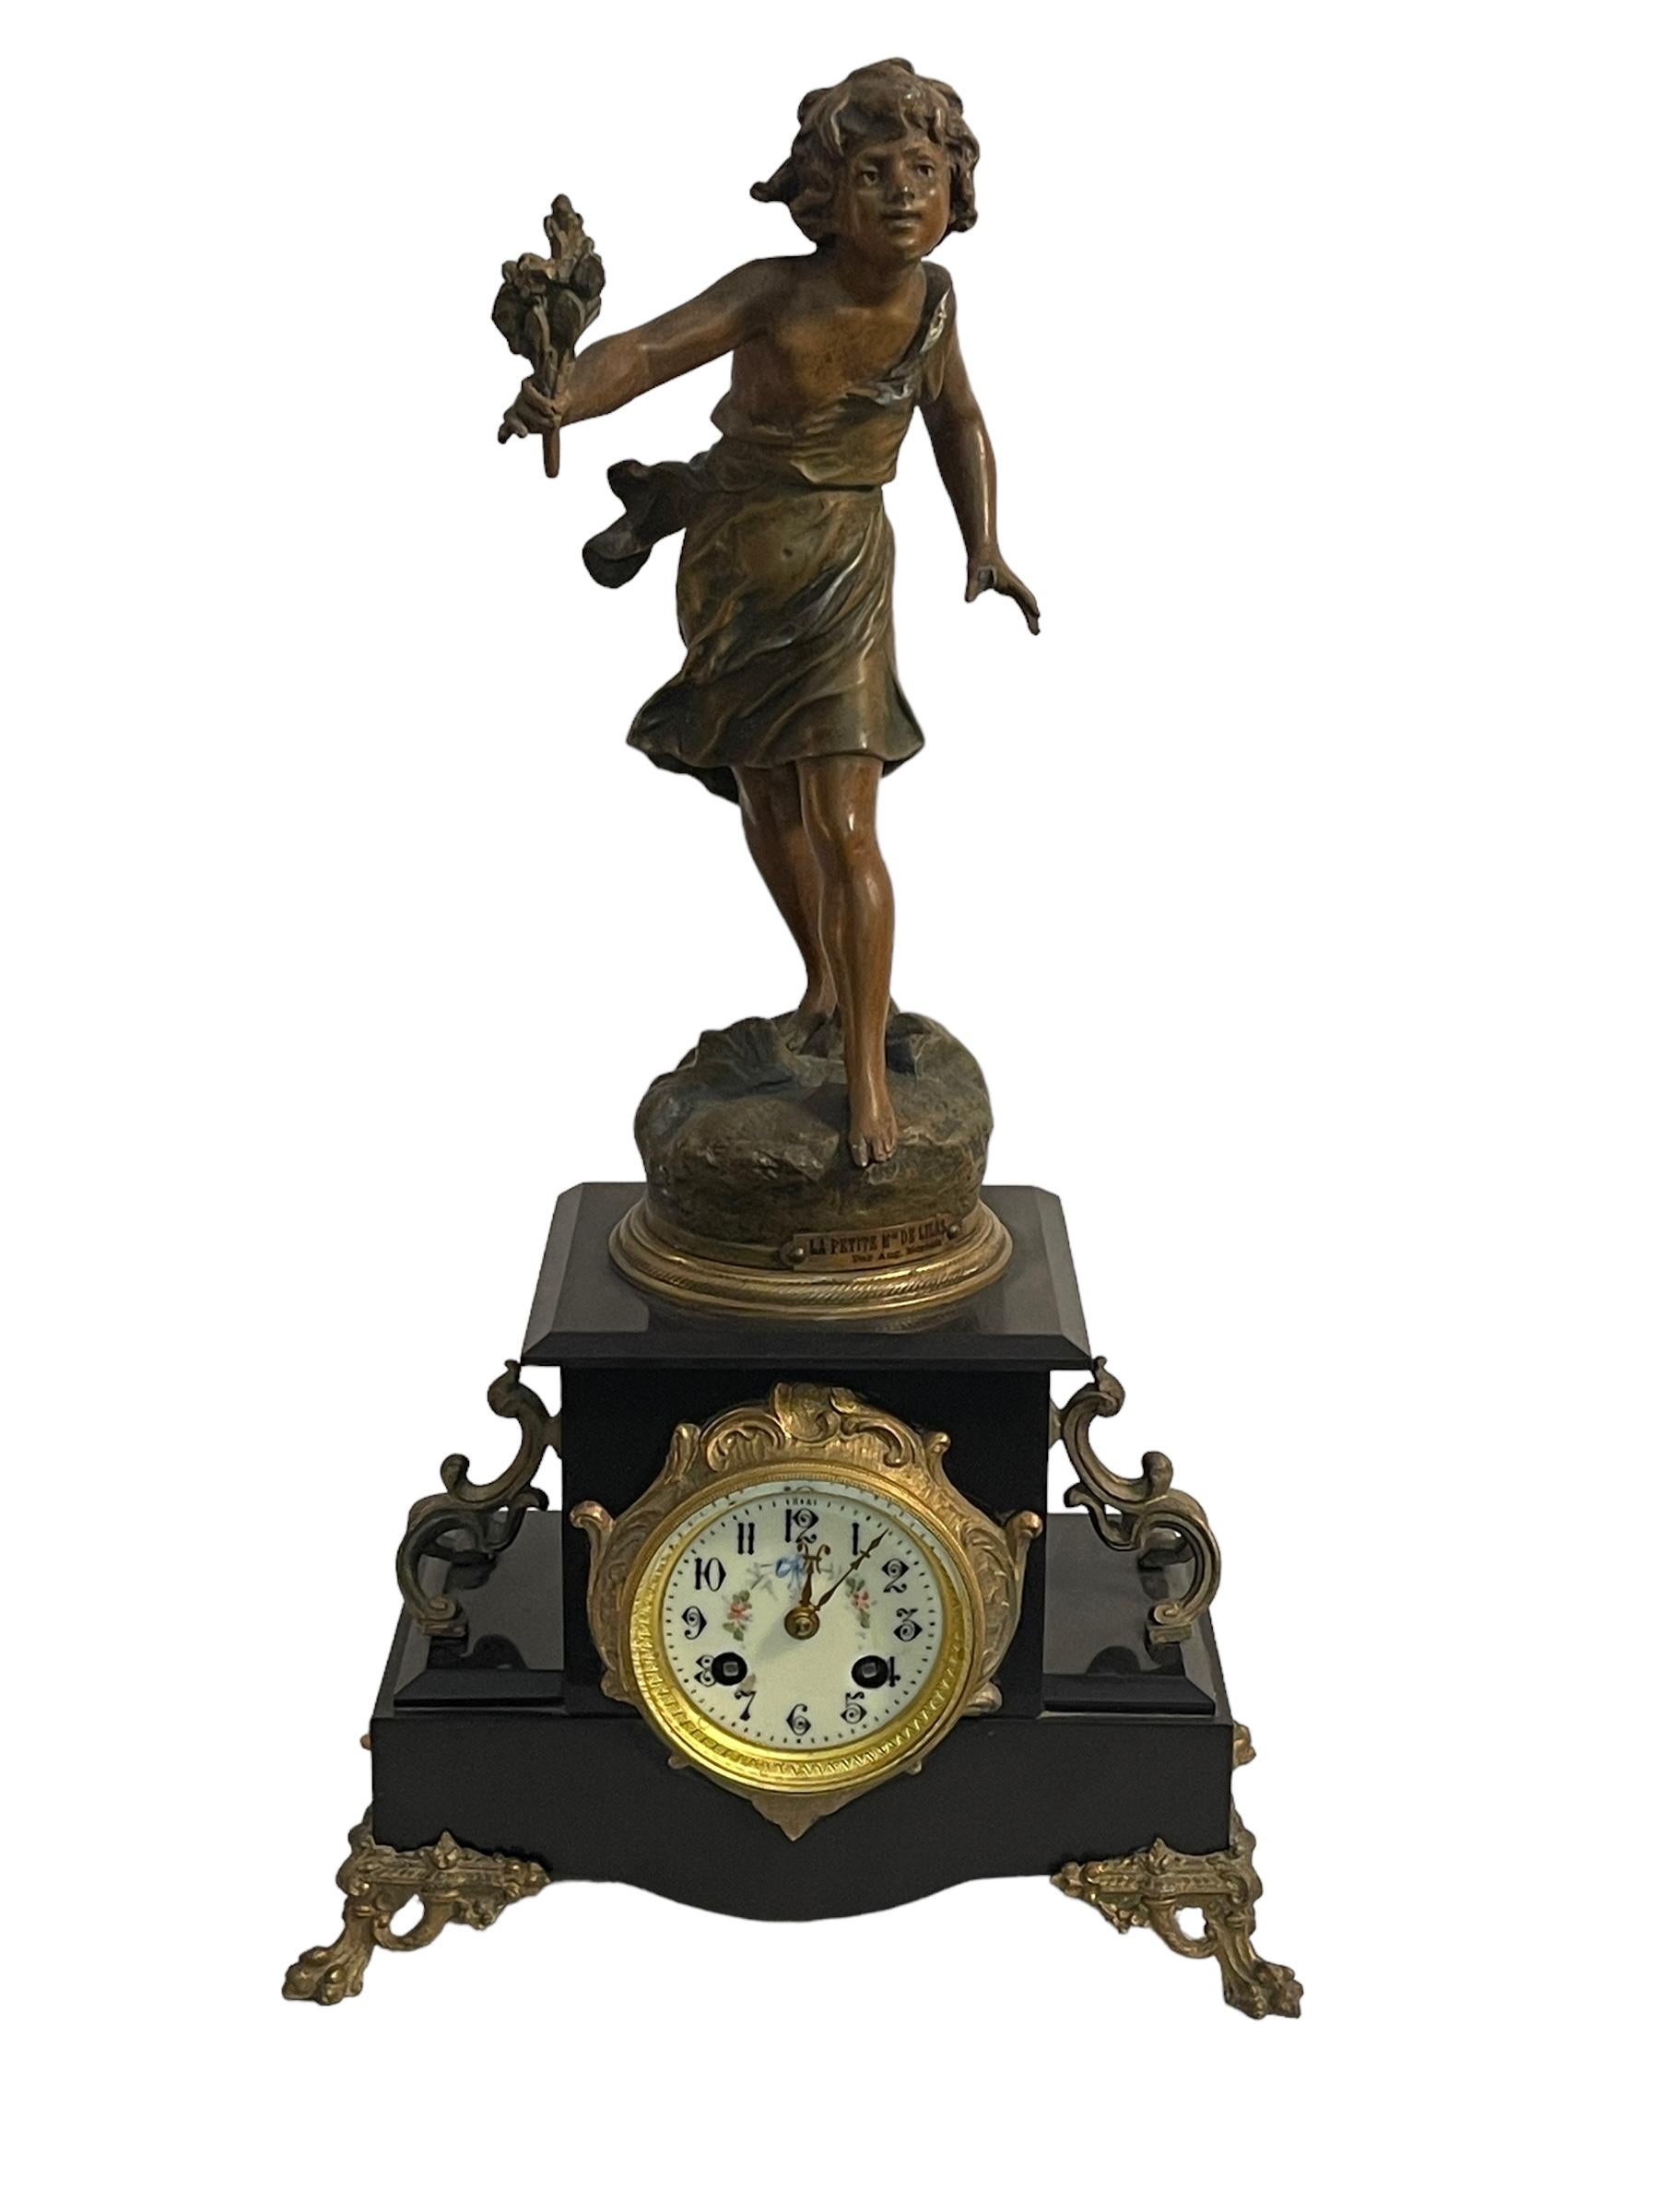 Horloge de table, fin du 19e siècle, avec sculpture en bronze montée, par Auguste Moreau
Horloge raffinée en marbre noir et frises de bronze, avec sculpture en bronze d'Auguste Moreau, jeune fille au bouquet de fleurs.
Excellent état, comme le